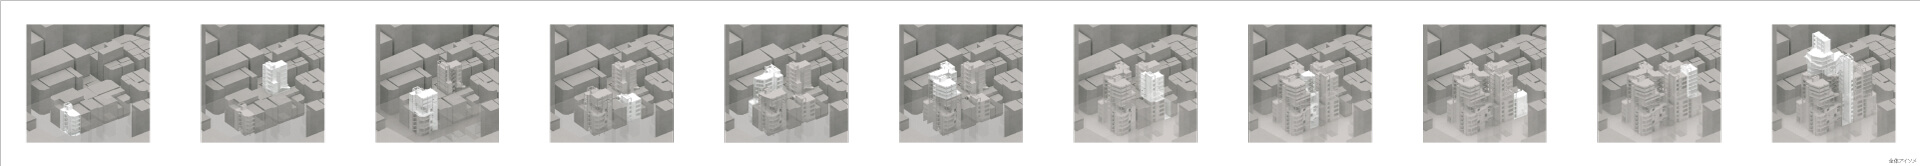 建築が巨大化する時 -雑居ビルの集積を基点とした段階的再開発手法--5